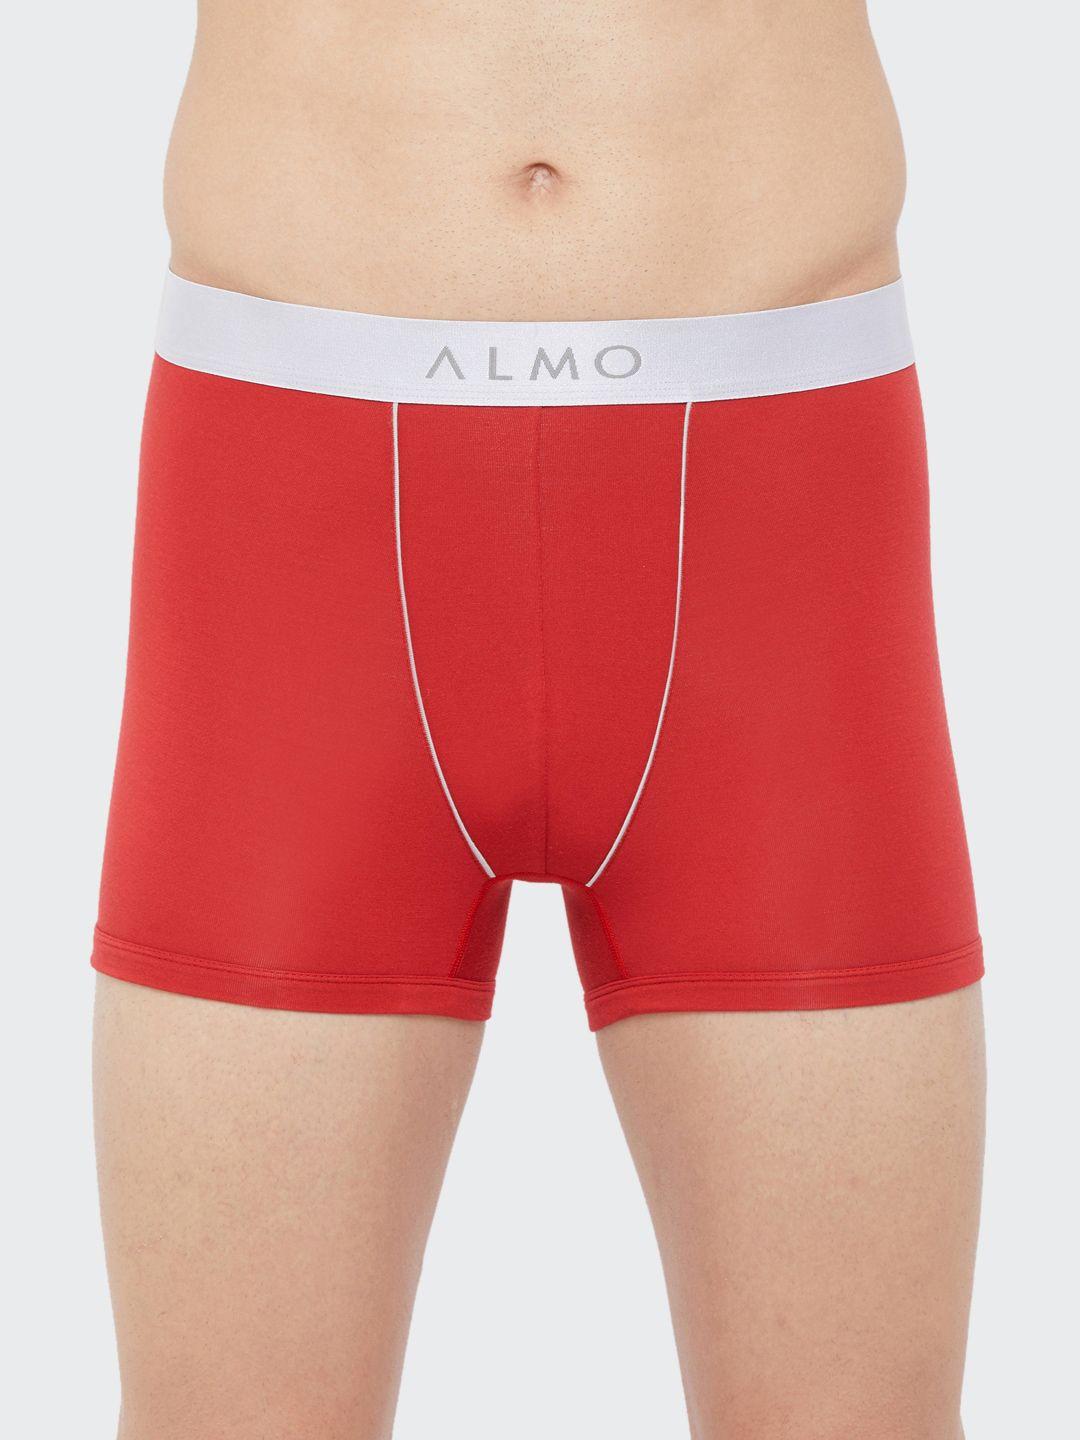 almo-wear-men-red-solid-slim-fit-dario-classic-trunks-fabio-t-108